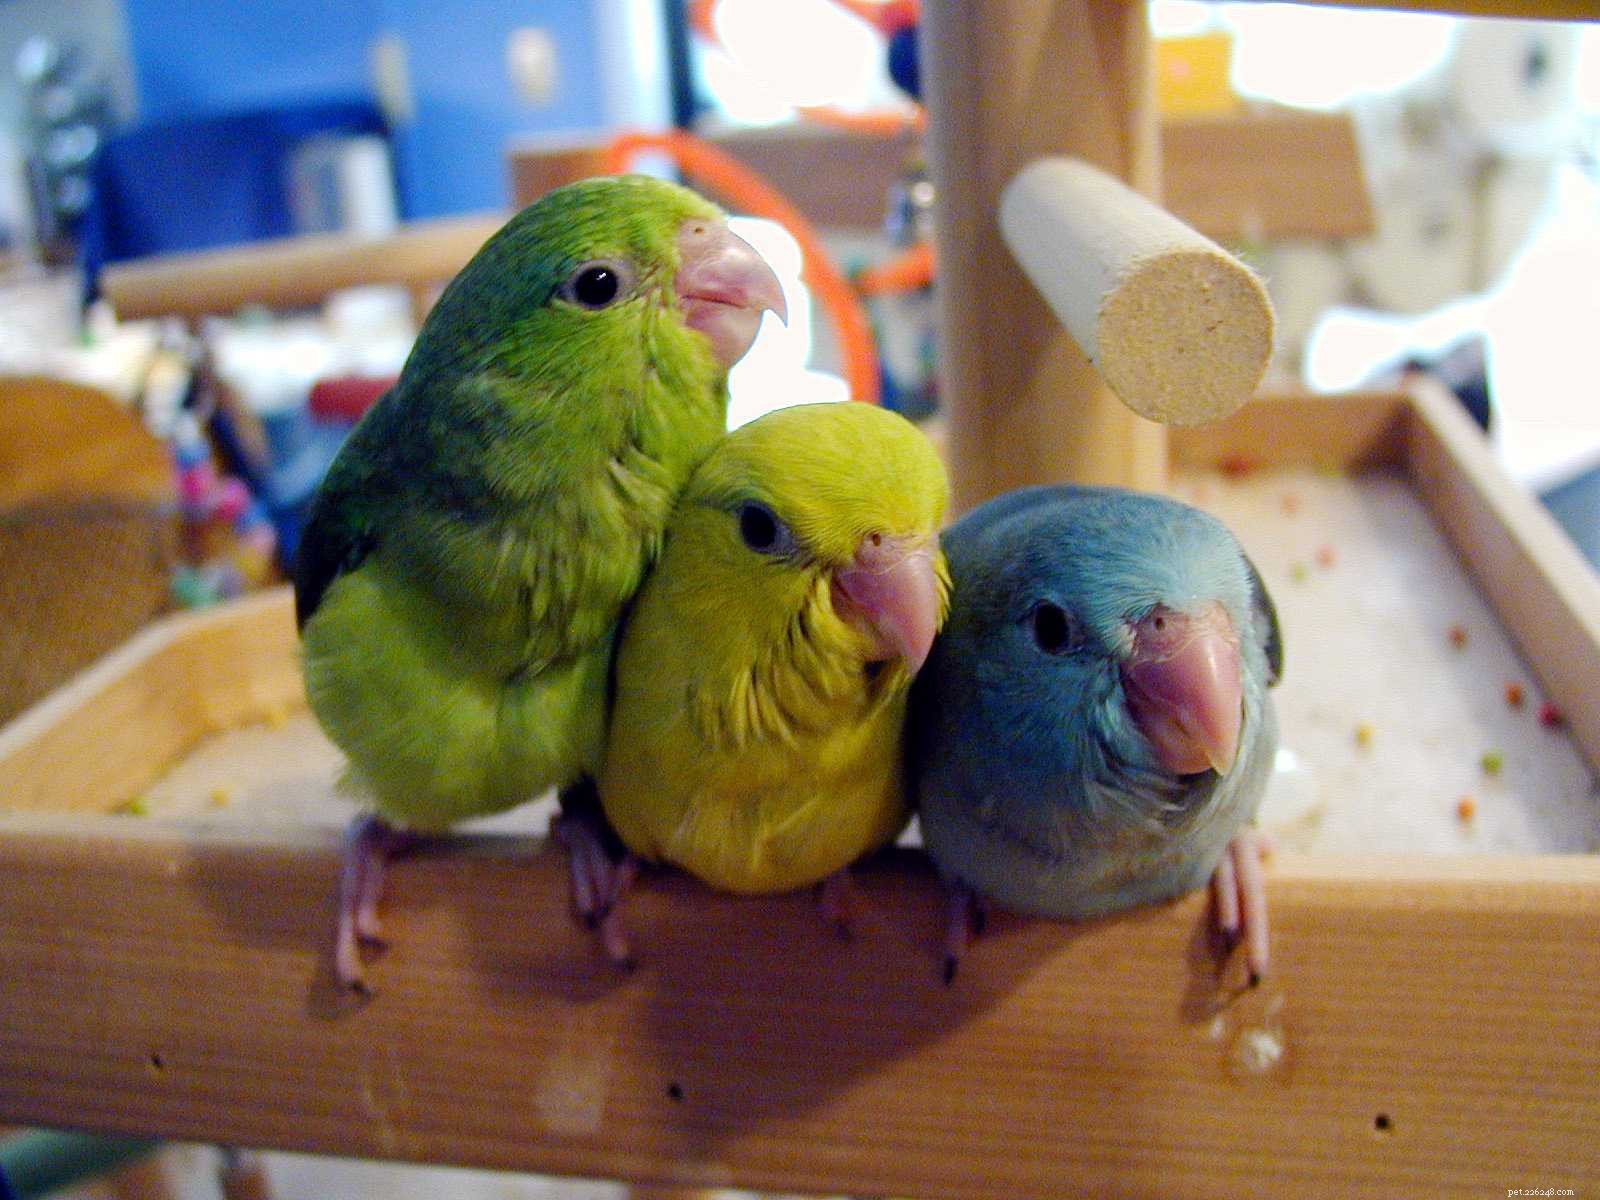 Fakta o papoušcích